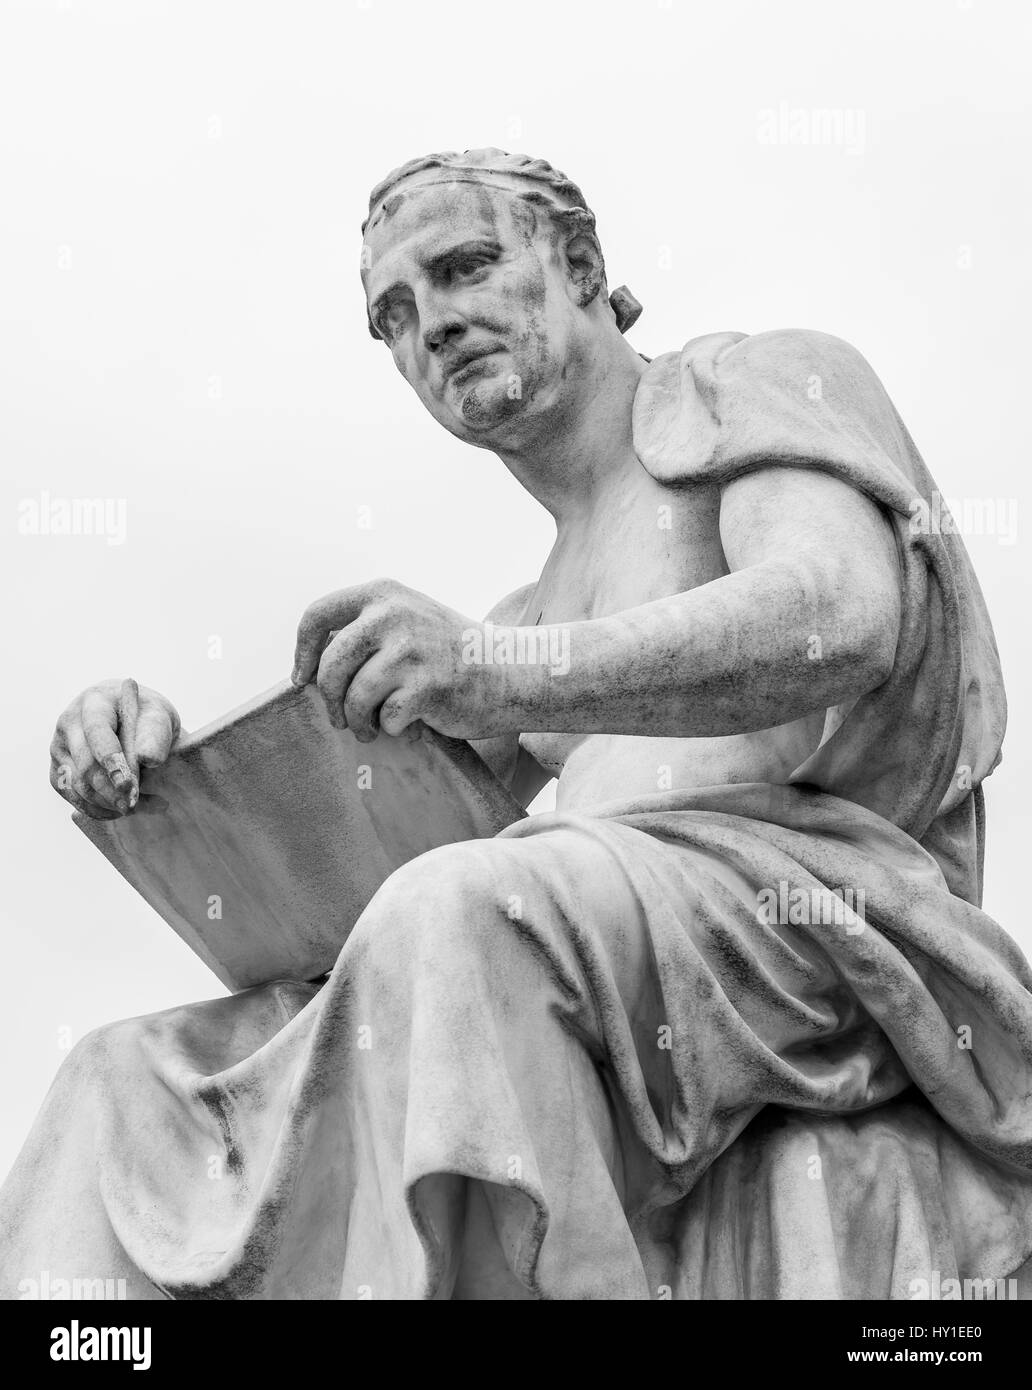 Un philosophe grec lève les yeux de son parchemin et se penche sur la distance. Cette statue est situé à l'extérieur du parlement autrichien à Vienne en Autriche. Banque D'Images